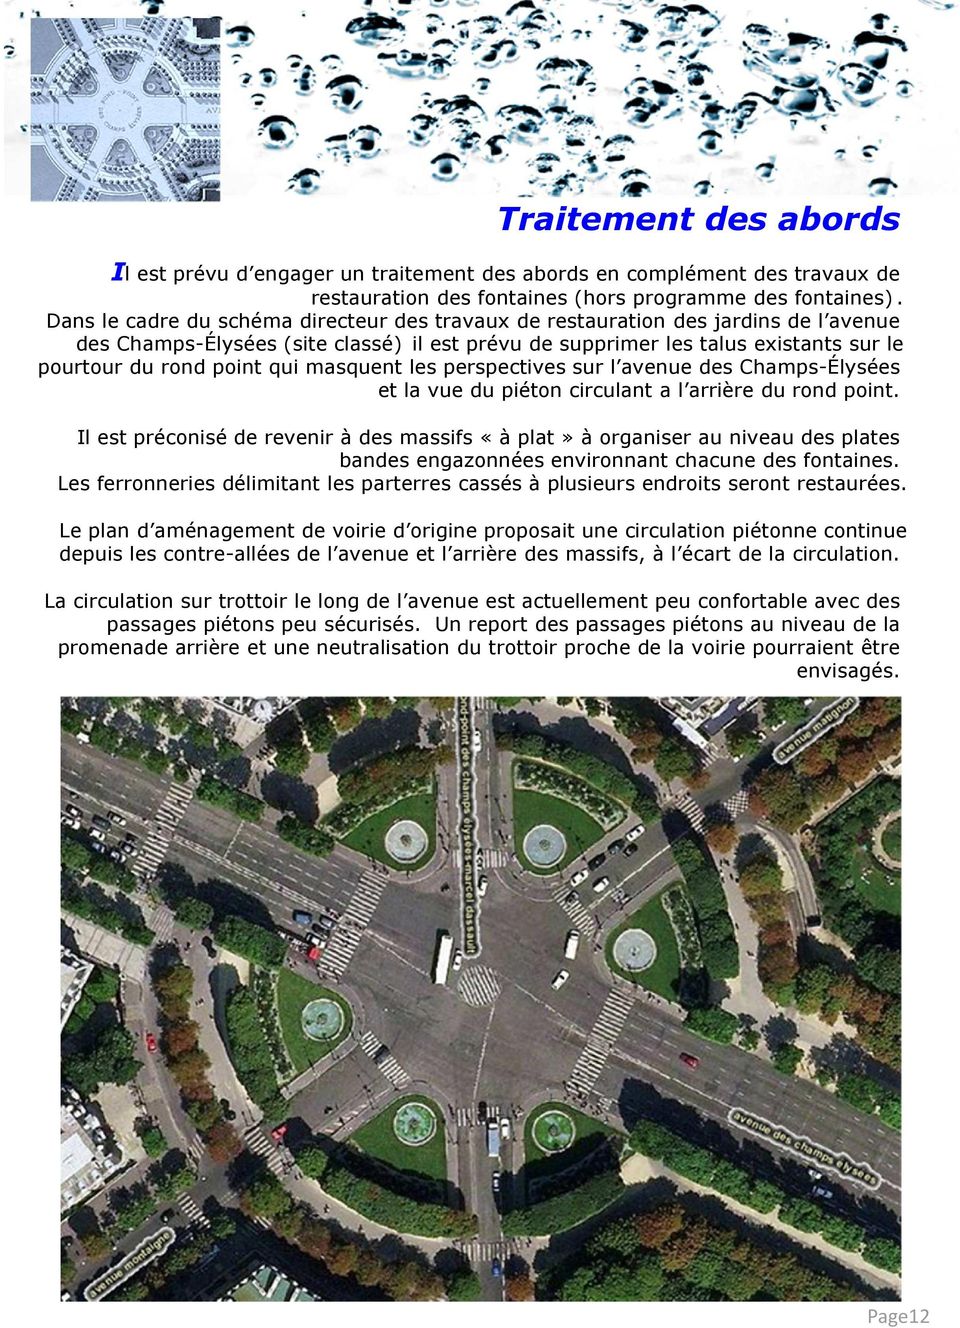 masquent les perspectives sur l avenue des Champs-Élysées et la vue du piéton circulant a l arrière du rond point.